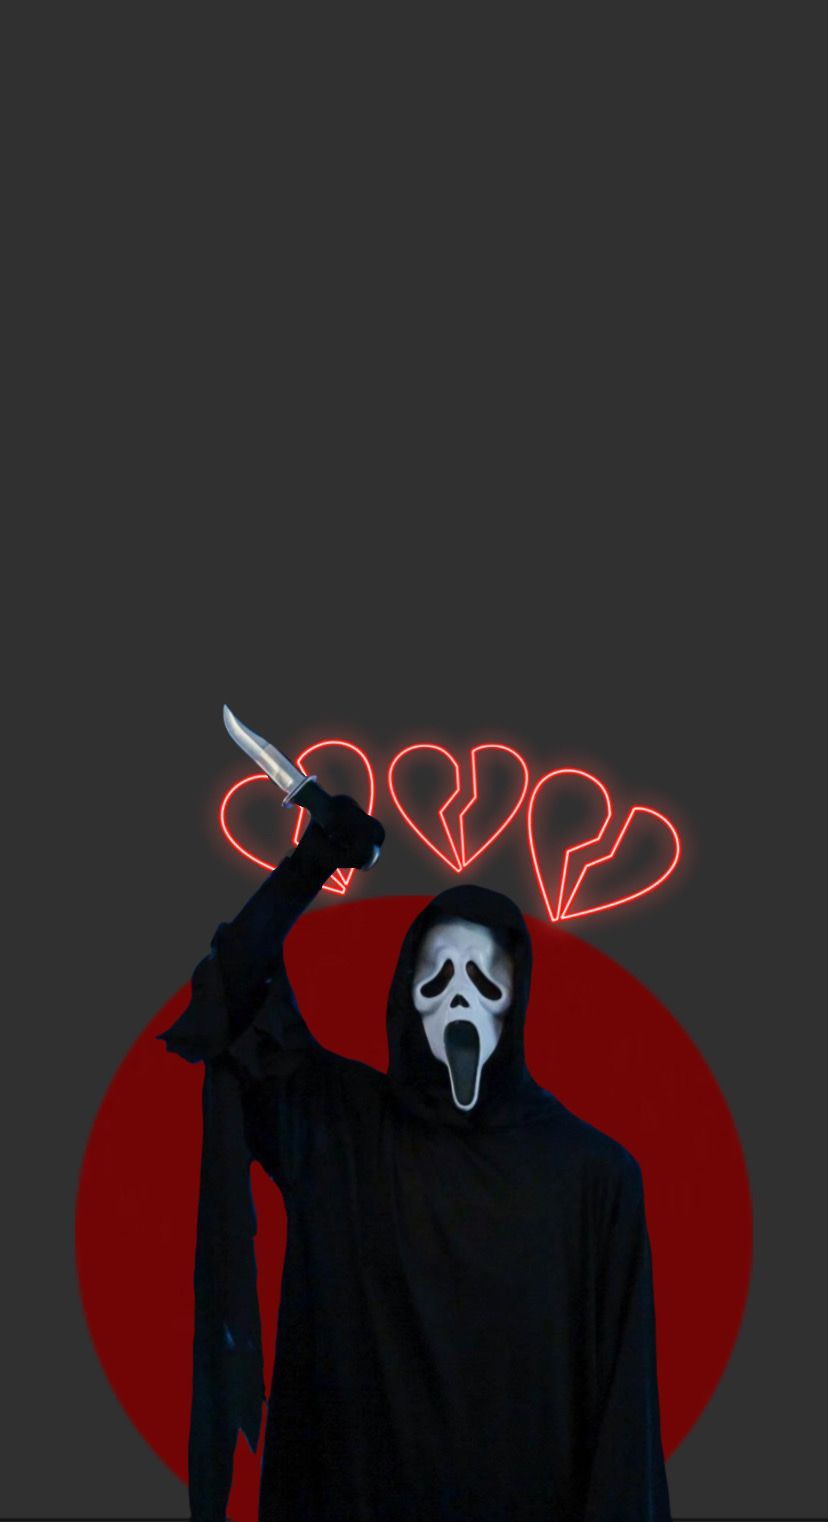 Blurry Ghostface Scream Wallpaper